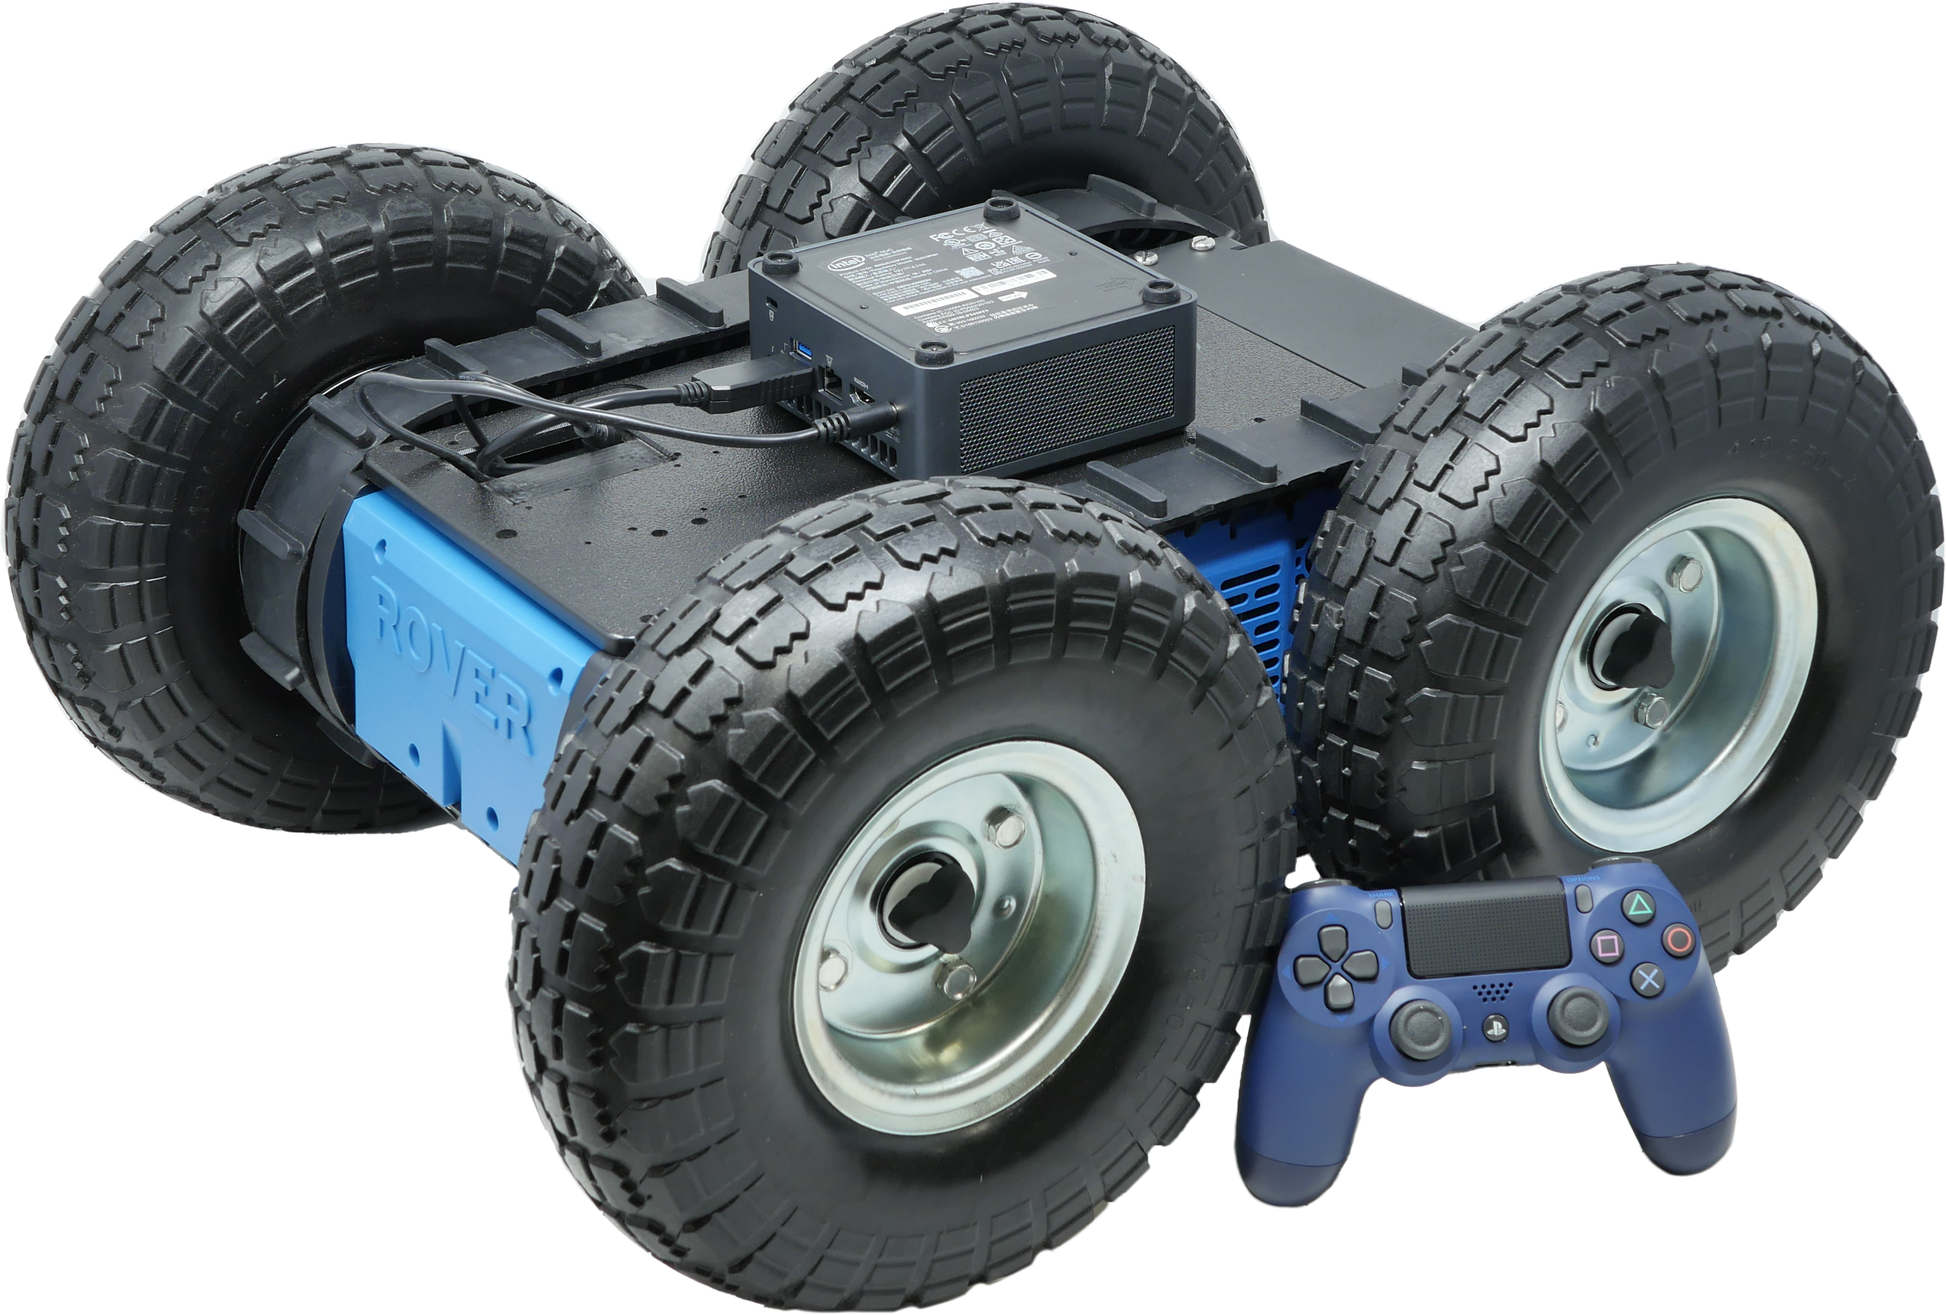 4WD Rover Zero 3 - Rover Robotics, Inc.